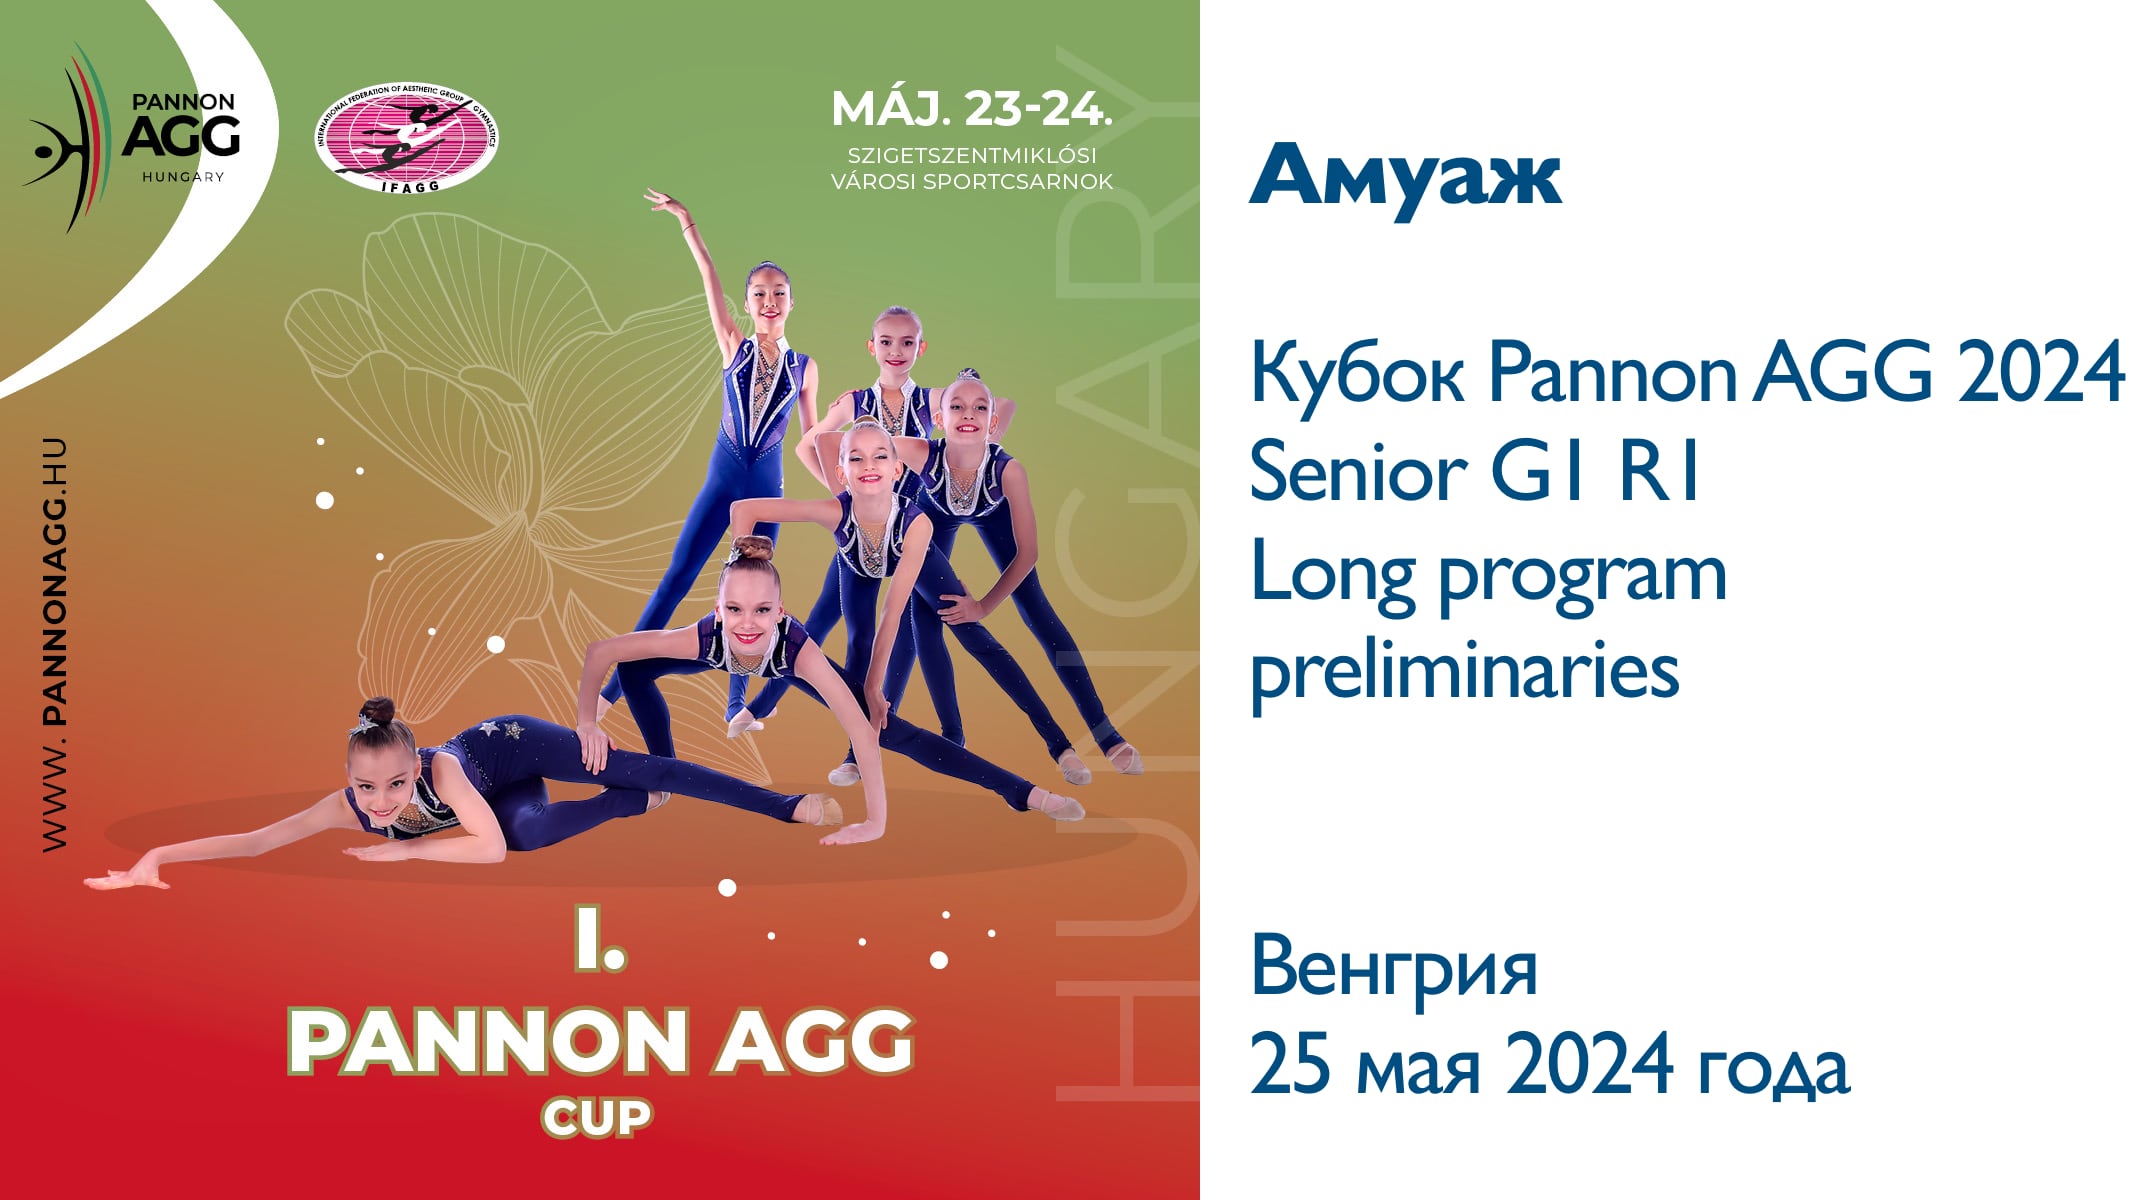 Амуаж, предварительные соревнования, Кубок Panon AGG 2024, Венгрия